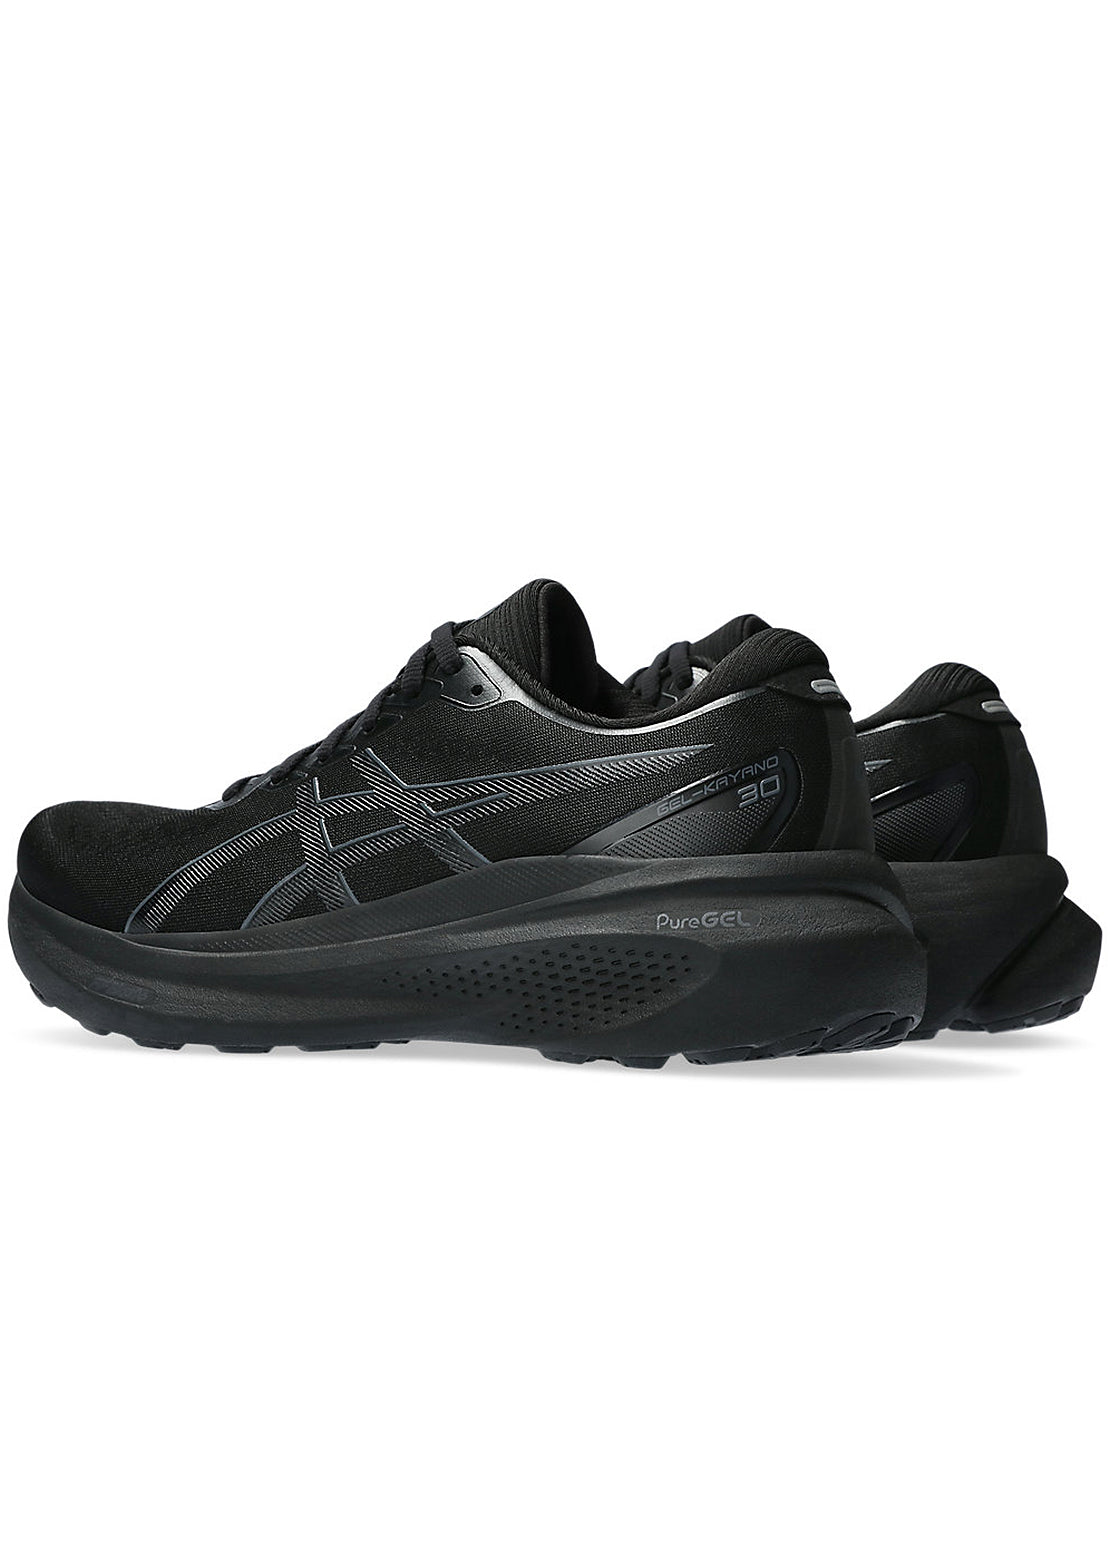 Asics Men&#39;s Gel-Kayano 30 Running Shoes Black/Black